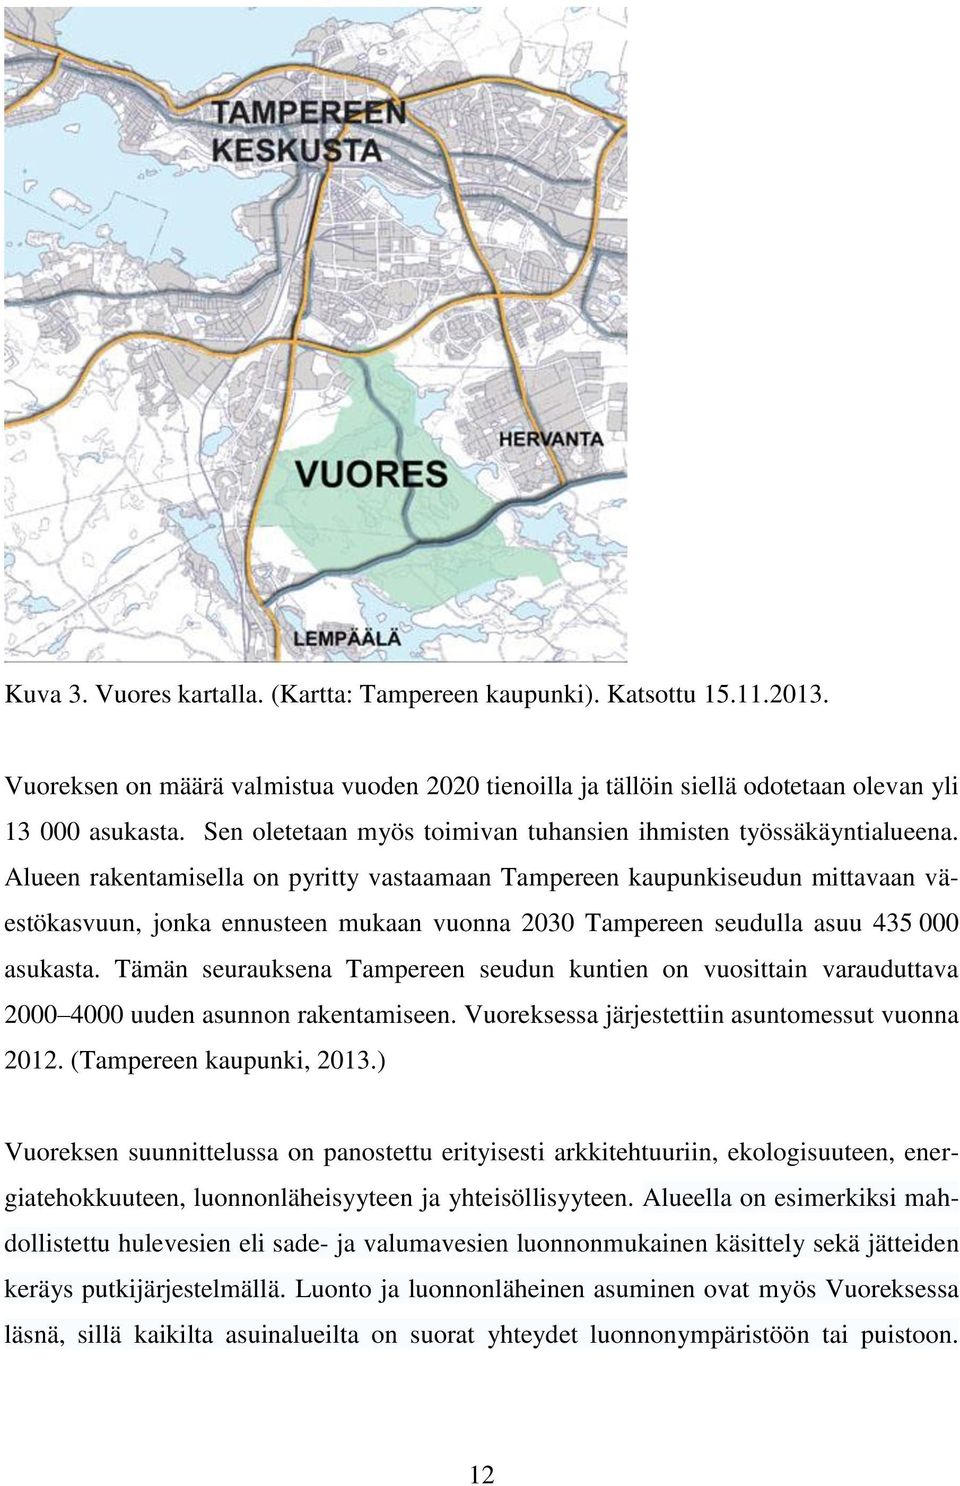 Alueen rakentamisella on pyritty vastaamaan Tampereen kaupunkiseudun mittavaan väestökasvuun, jonka ennusteen mukaan vuonna 2030 Tampereen seudulla asuu 435 000 asukasta.